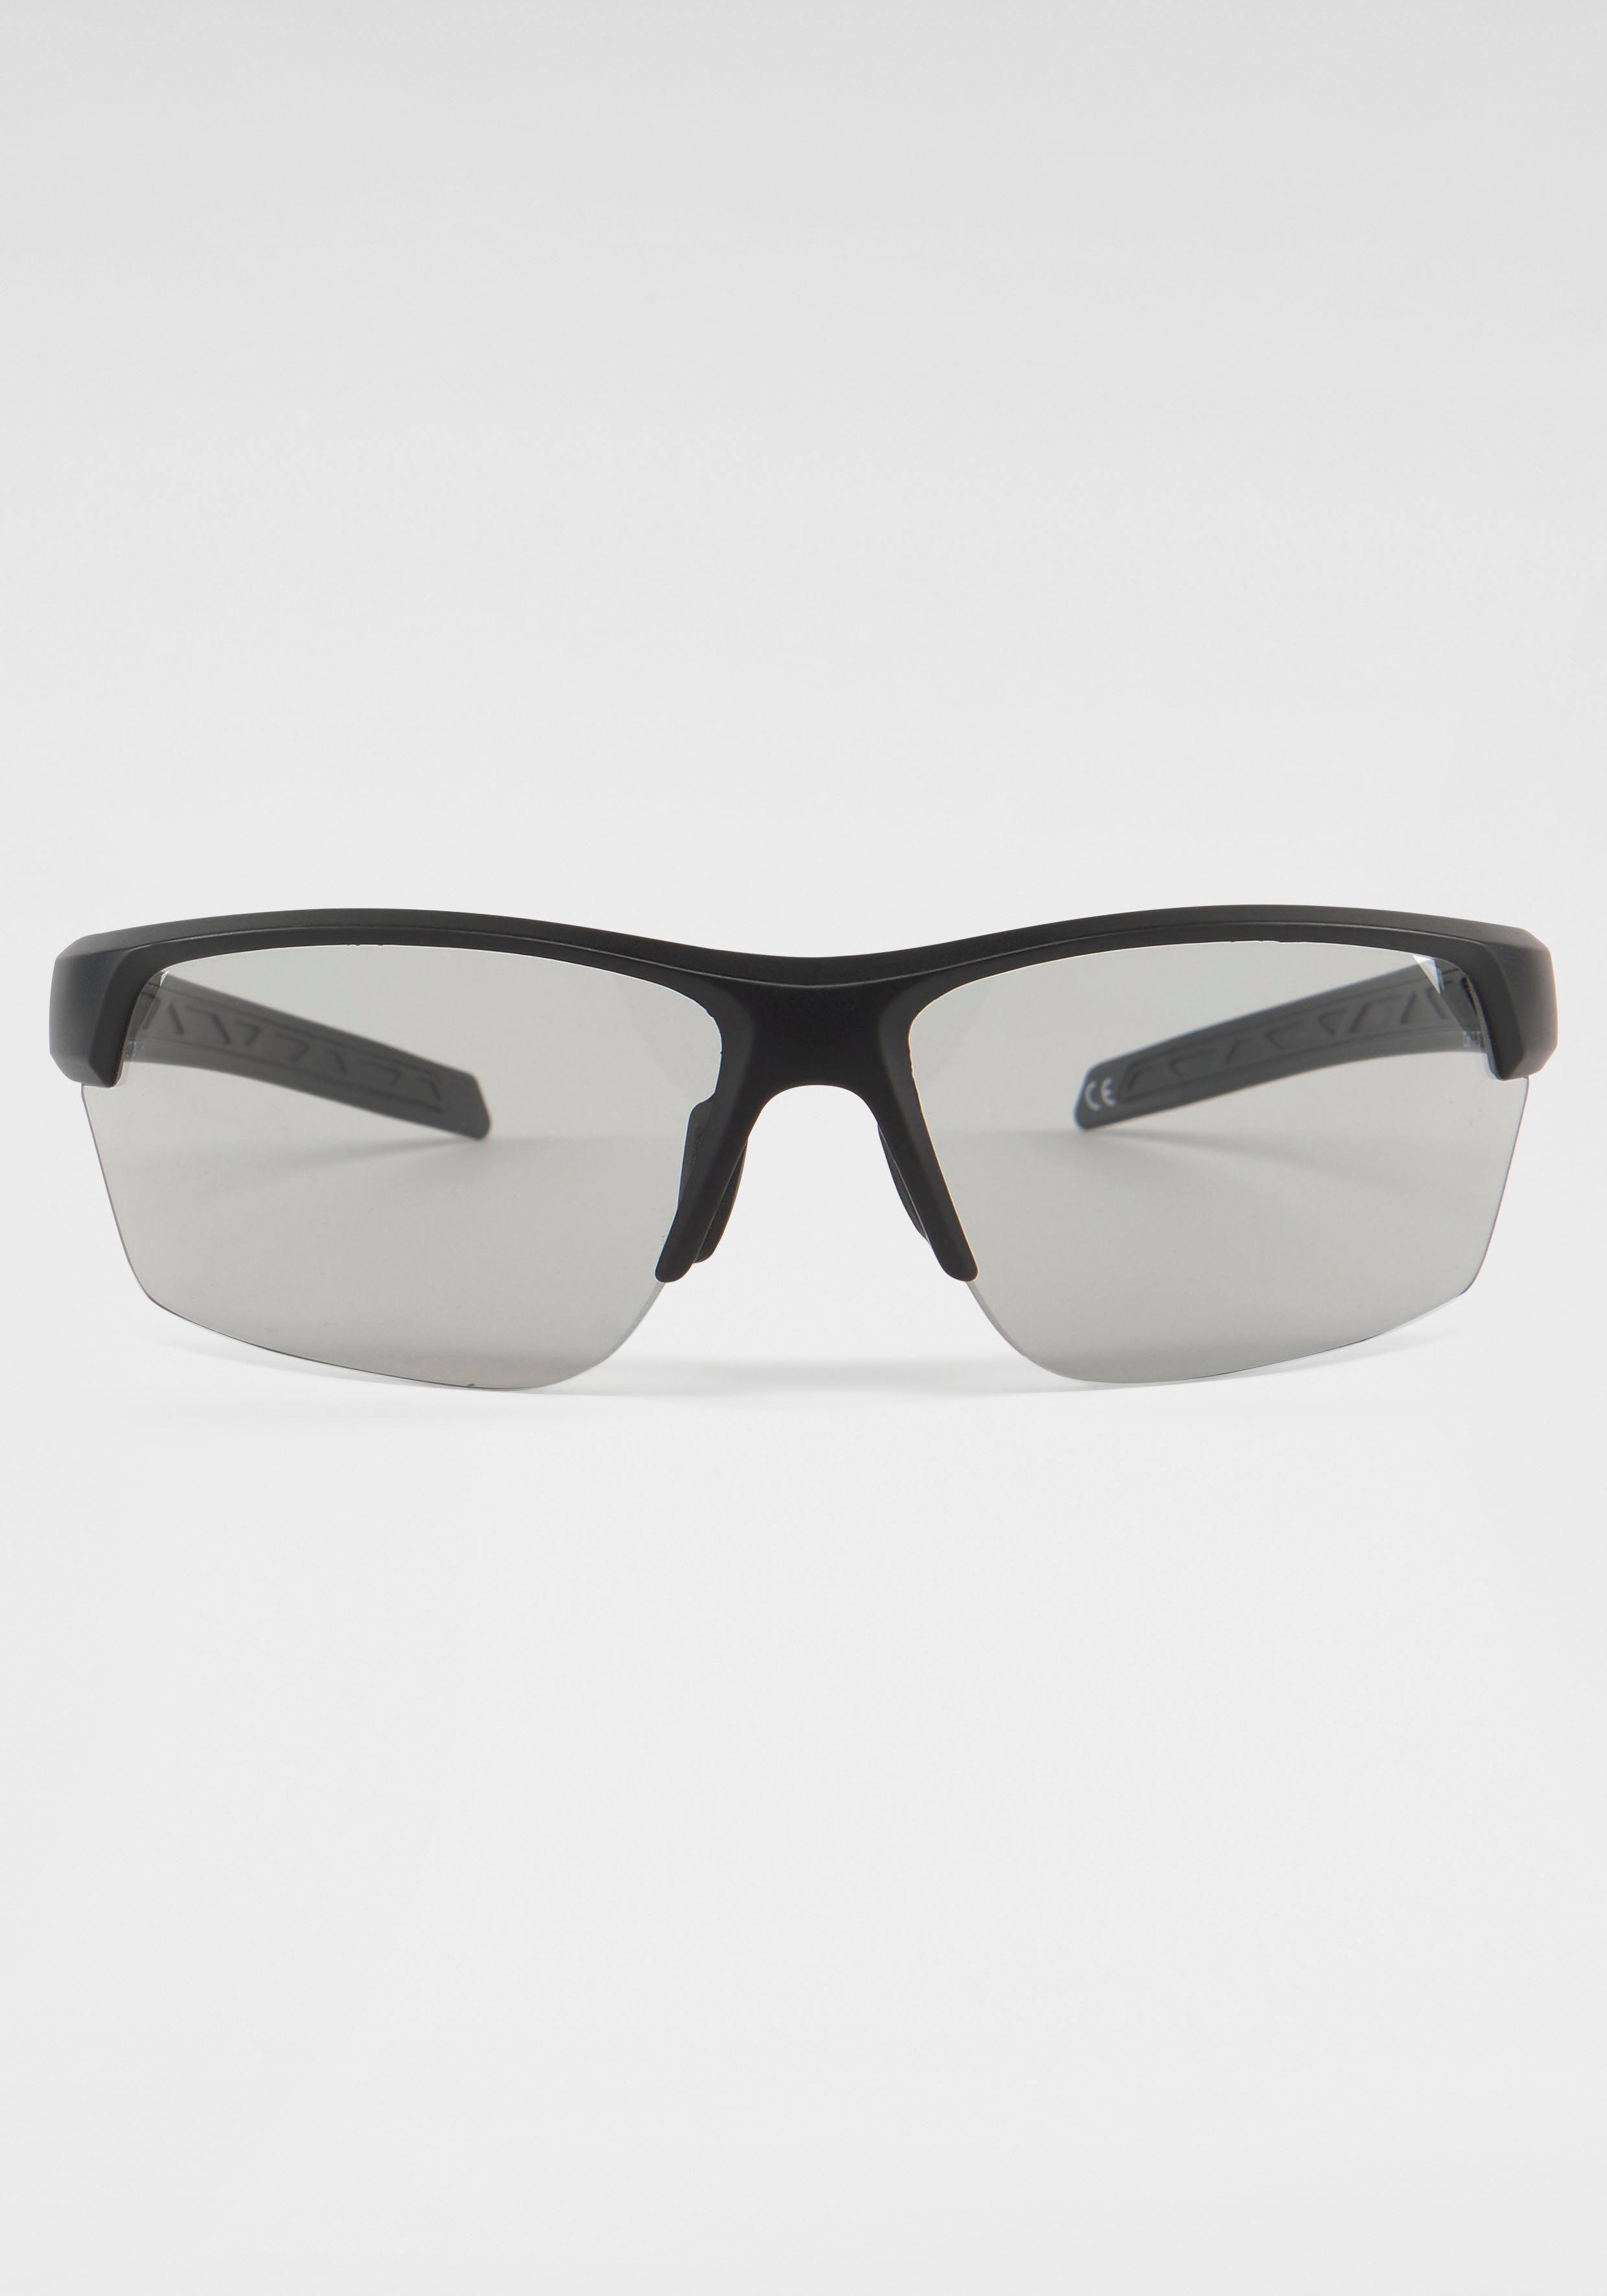 BACK IN BLACK Eyewear Sonnenbrille, Bügel leicht gebogen | Sonnenbrillen